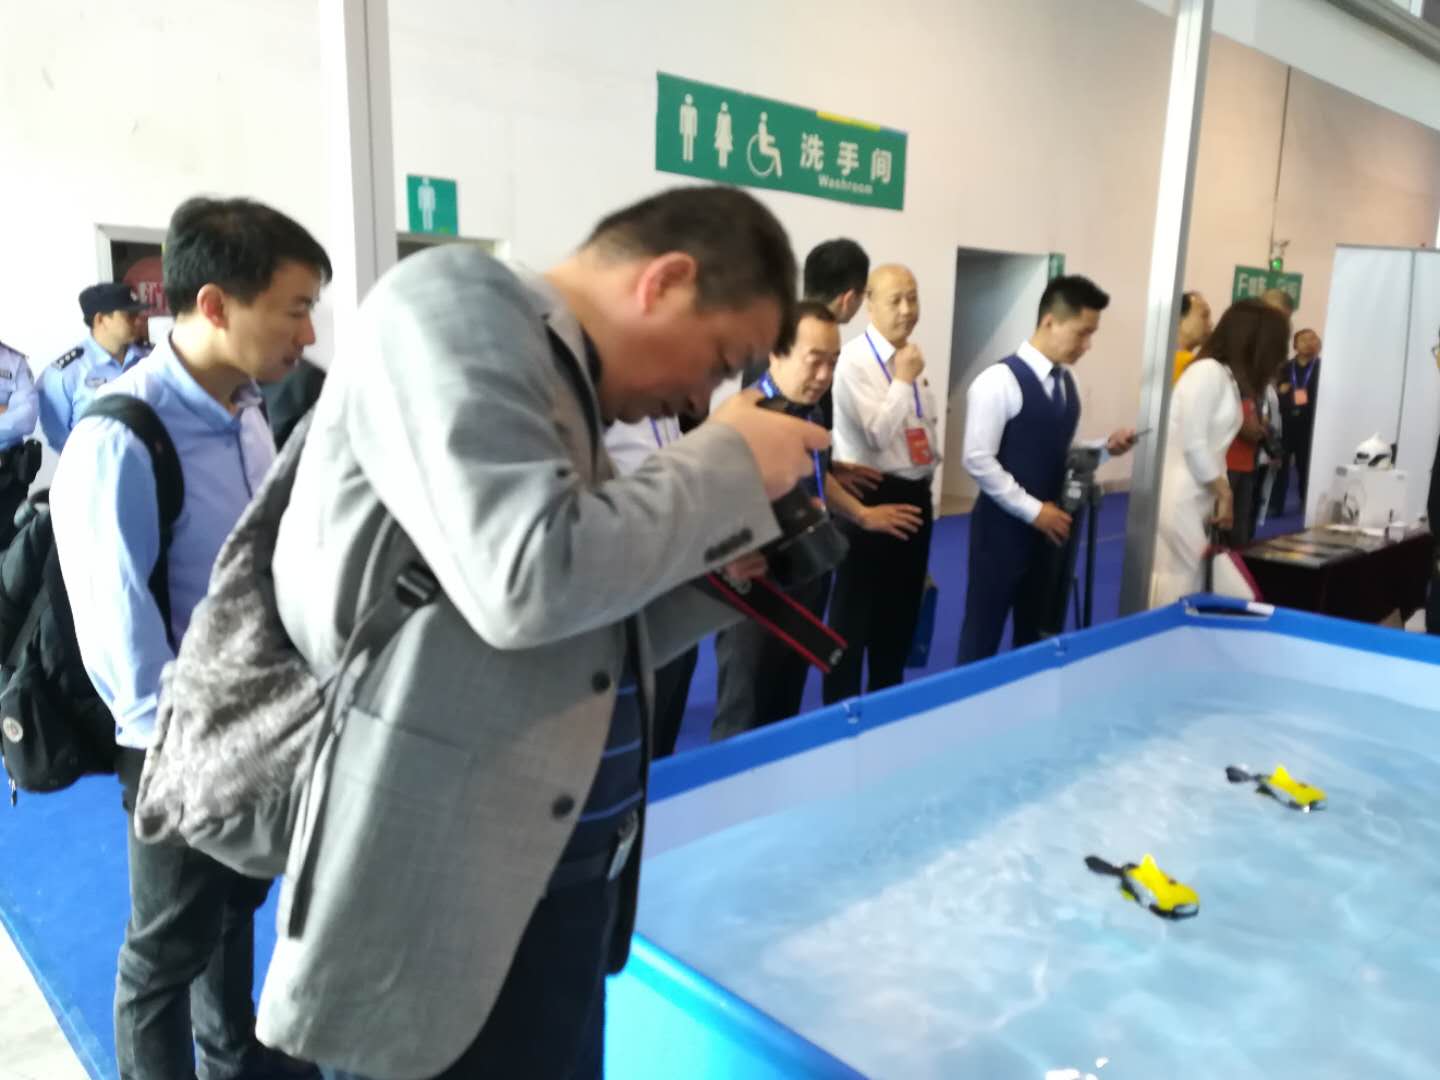 【今日头条】Robosea携四大水下机器人亮相第八届中国(芜湖)科普产品博览交易会